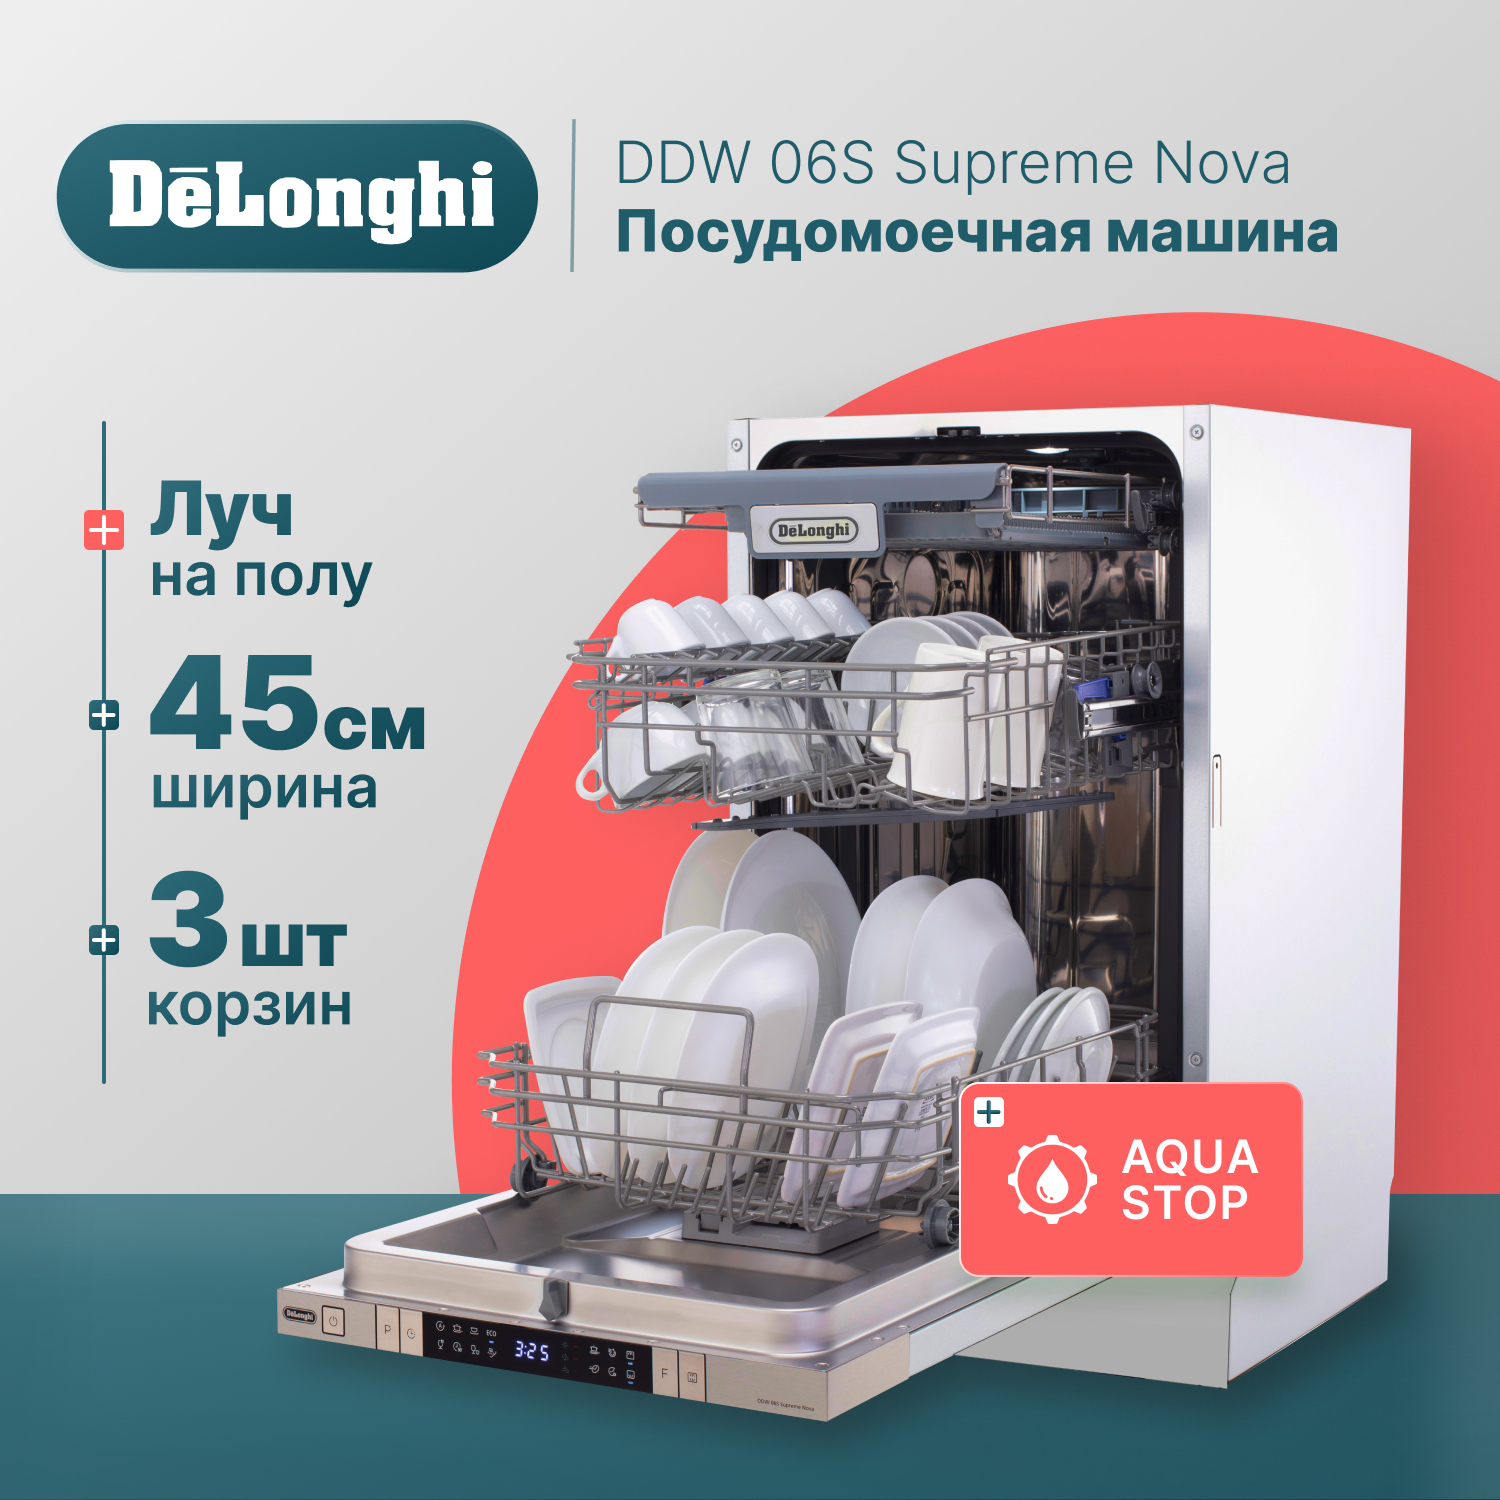 Встраиваемая посудомоечная машина Delonghi DDW06S Supreme Nova встраиваемая посудомоечная машина delonghi ddw06s basilia